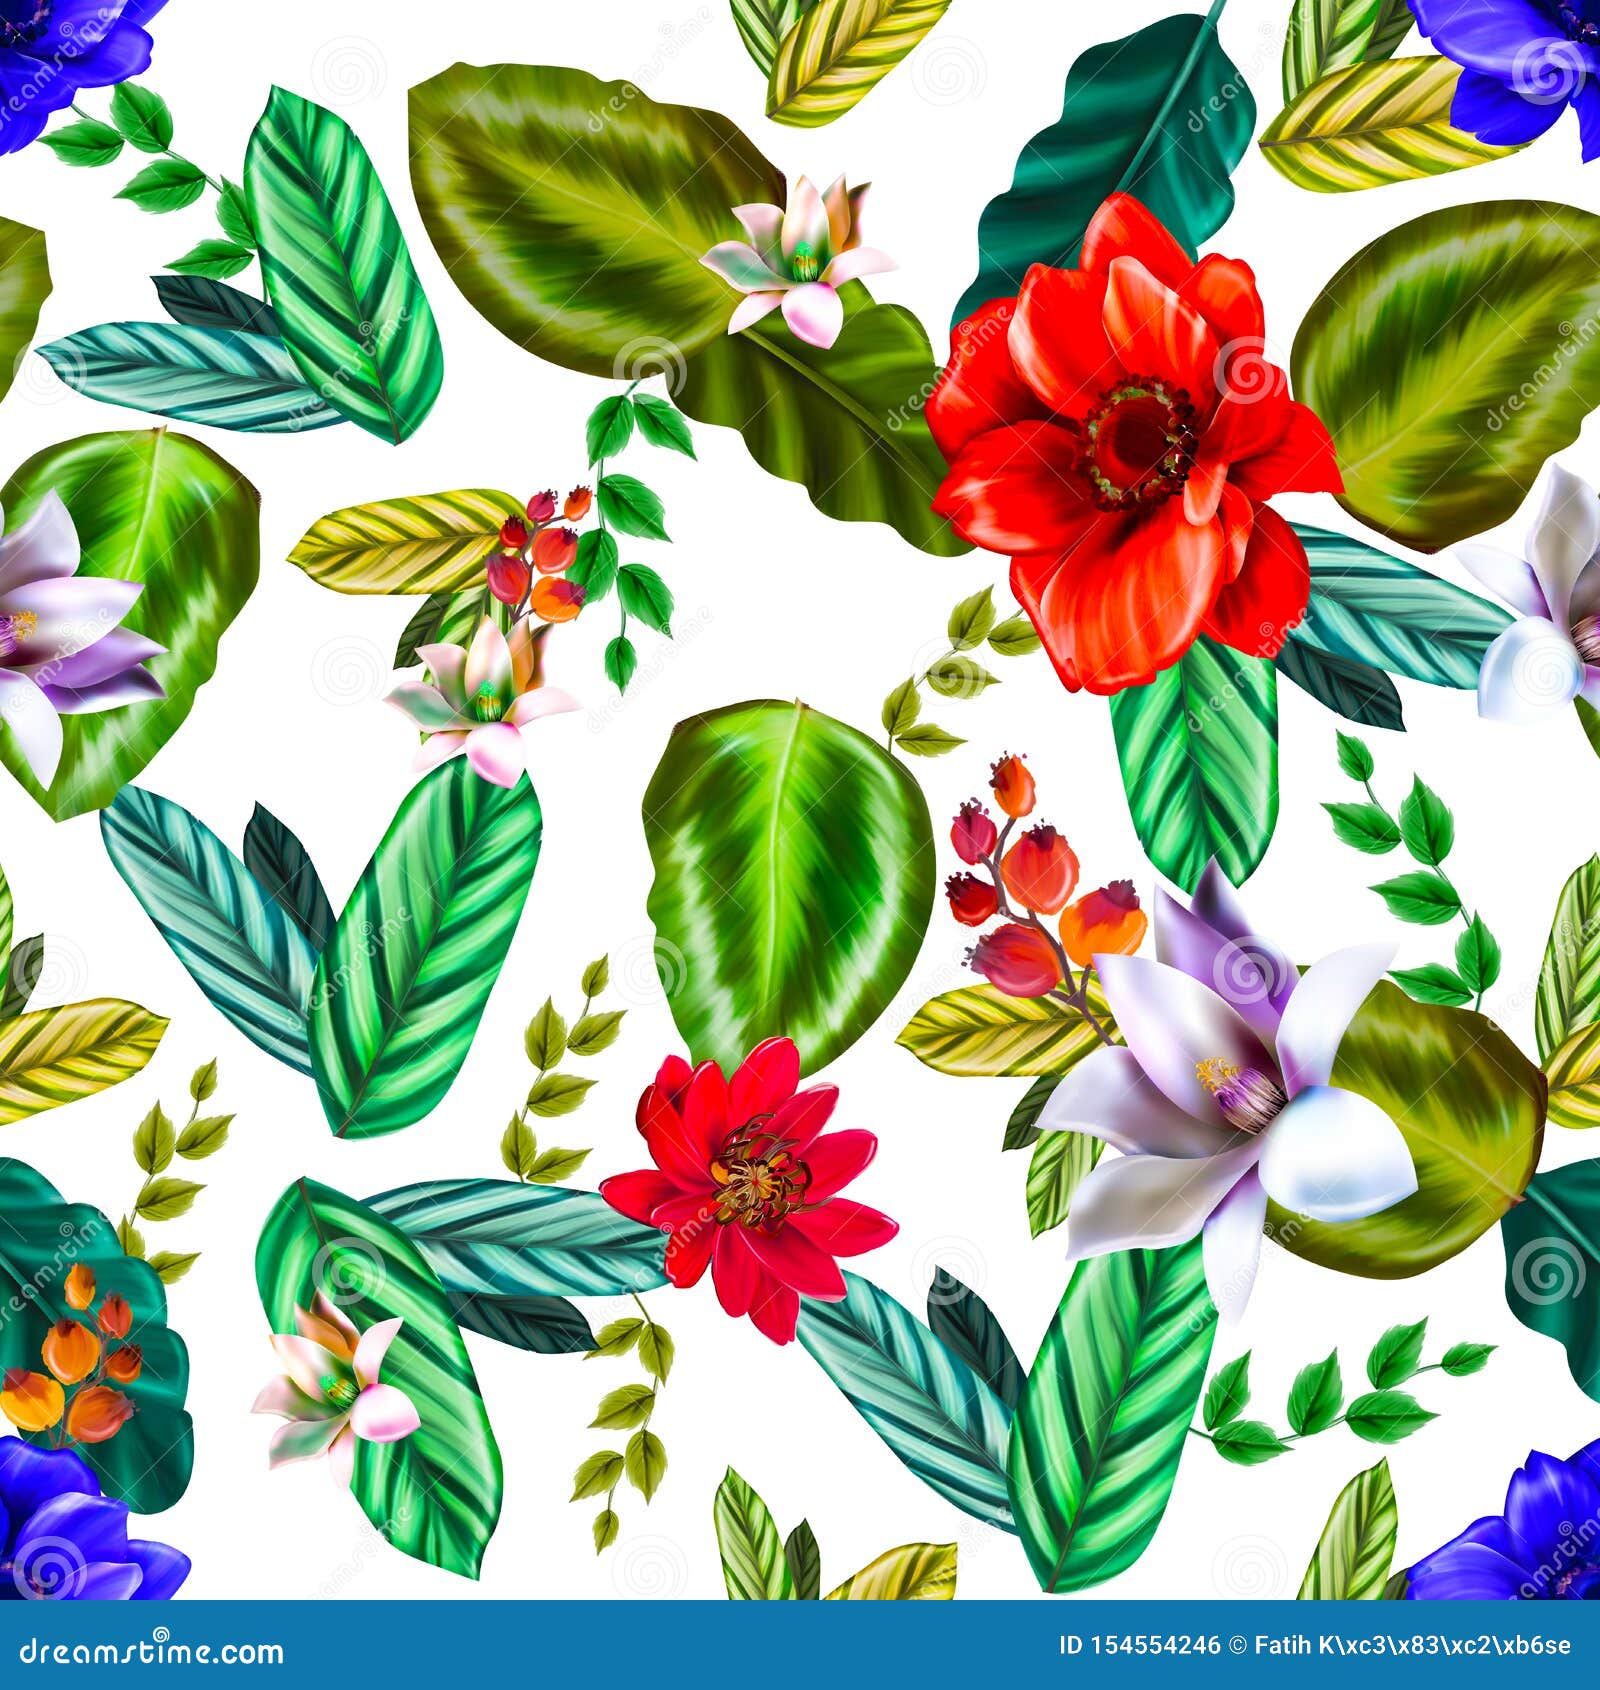 PatrÃ³n Transparente De Color Agua Con Hojas Tropicales,DiseÃ±o BotÃ¡nico  De BaÃ±ador Stock de ilustración - Ilustración de tropicales, color:  154554246